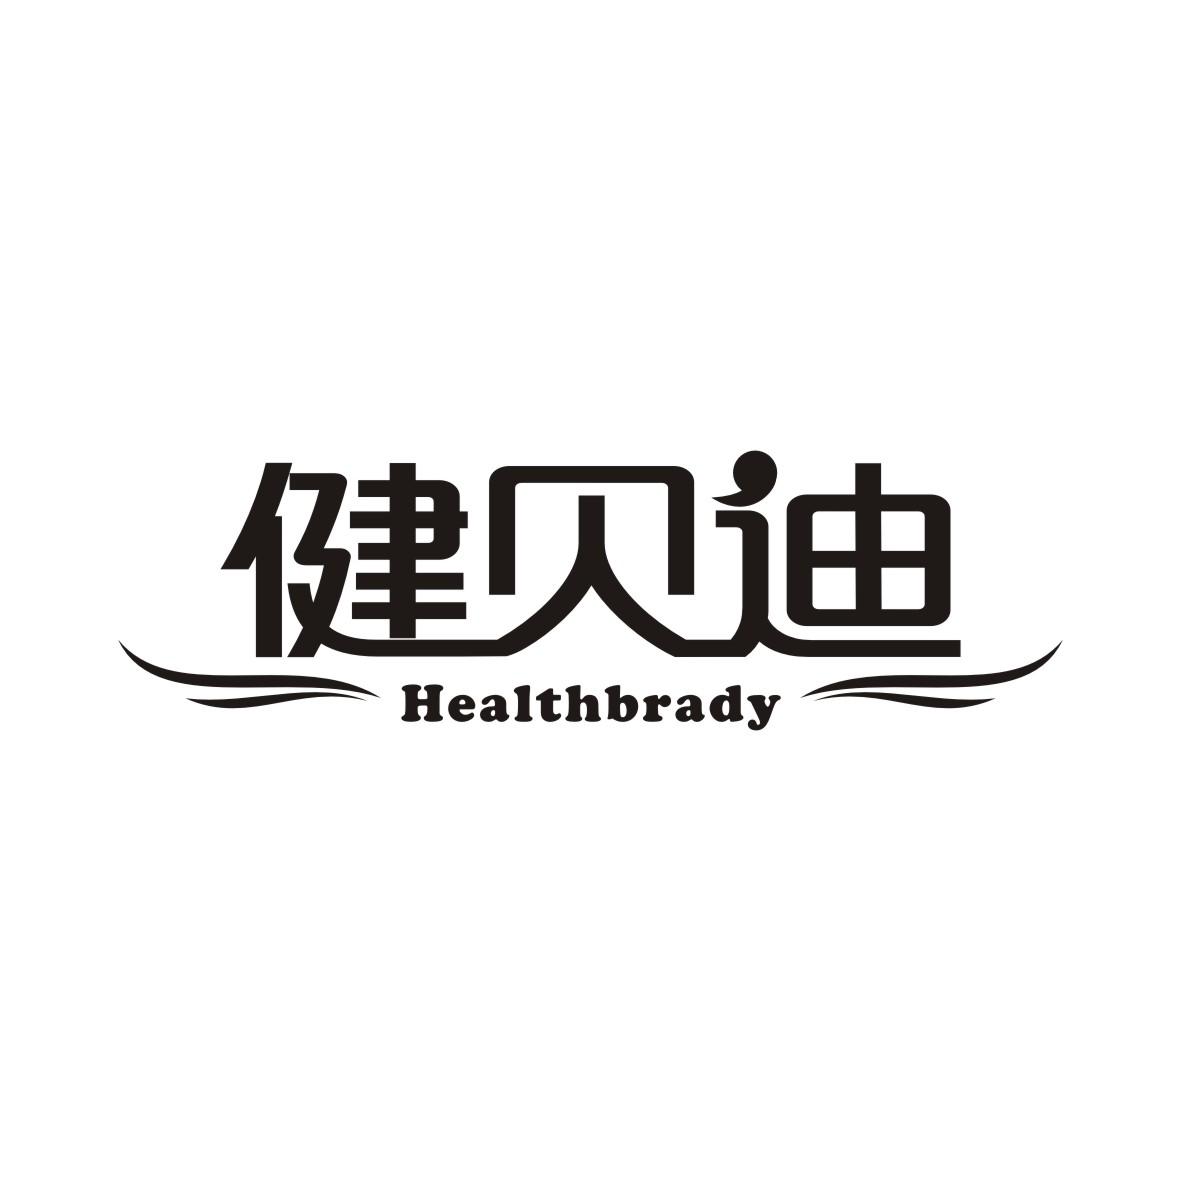 32类-啤酒饮料健贝迪 HEALTHBRADY商标转让